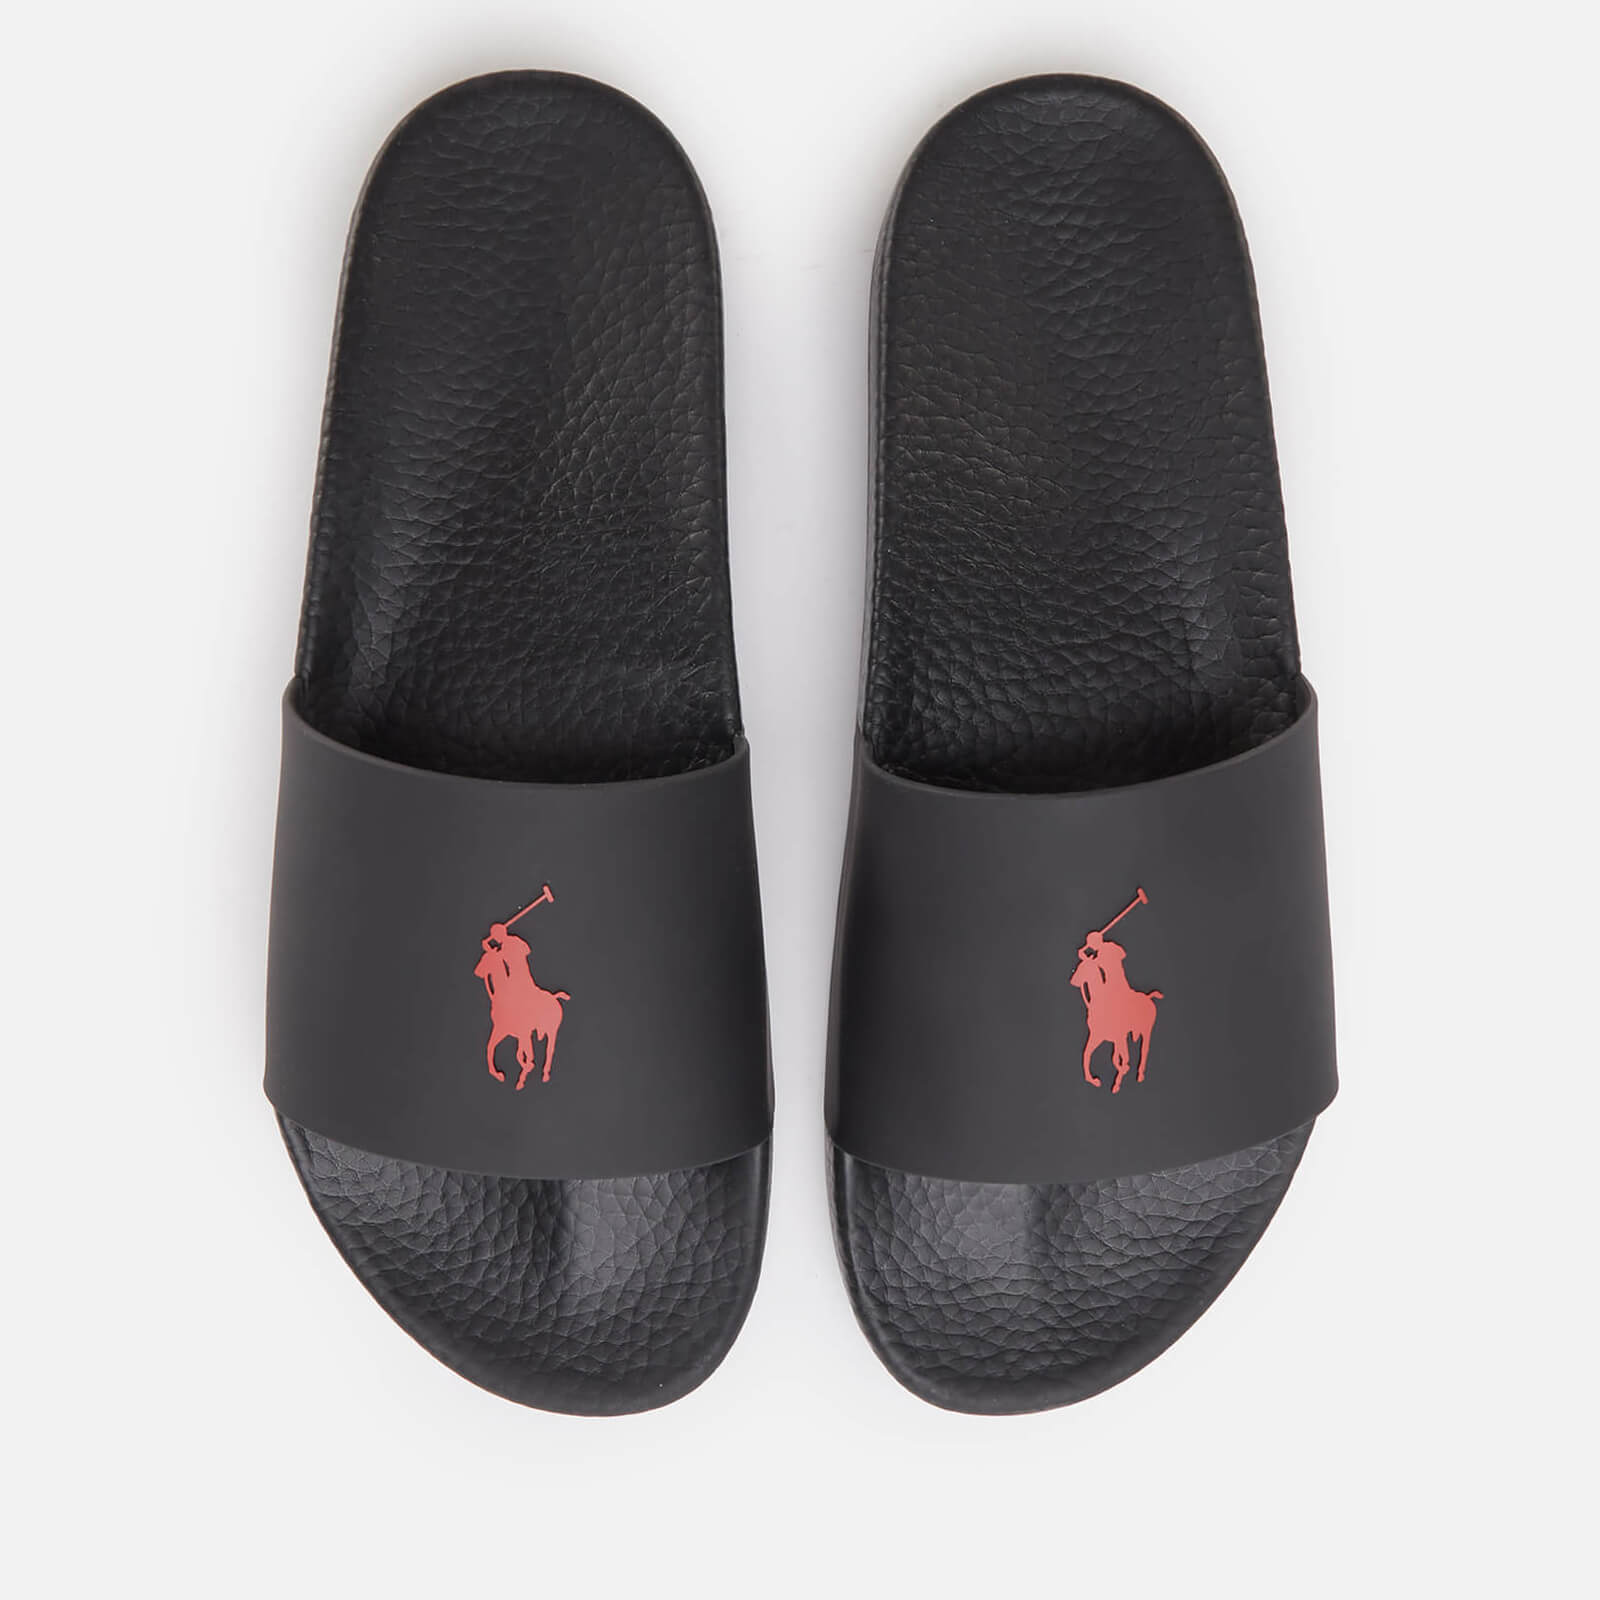 Polo Ralph Lauren Men’s Pp Slide Sandals - Black/Red PP